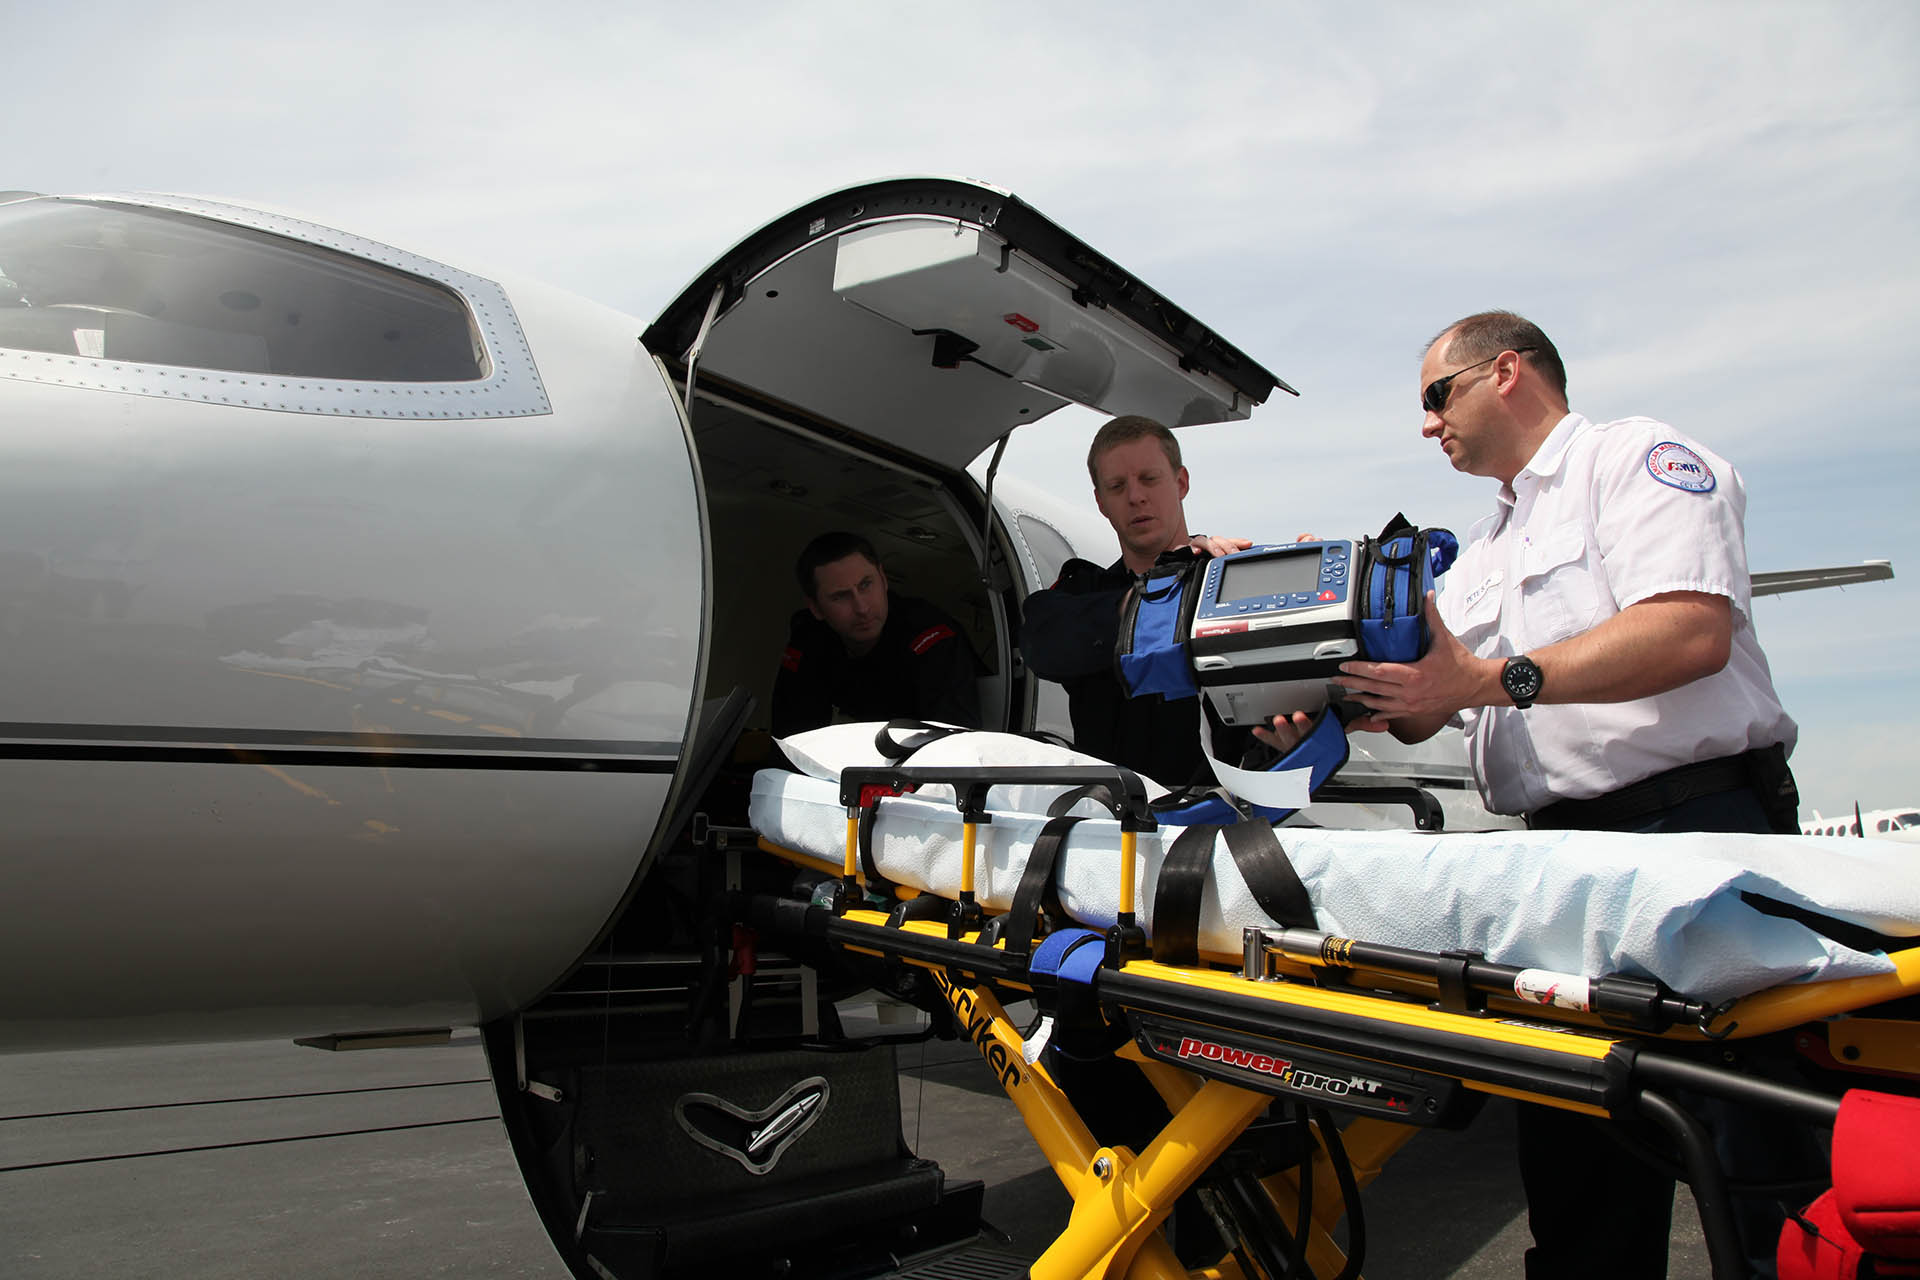 Medflight Patient Air Transport Services Medflight One Medflight One